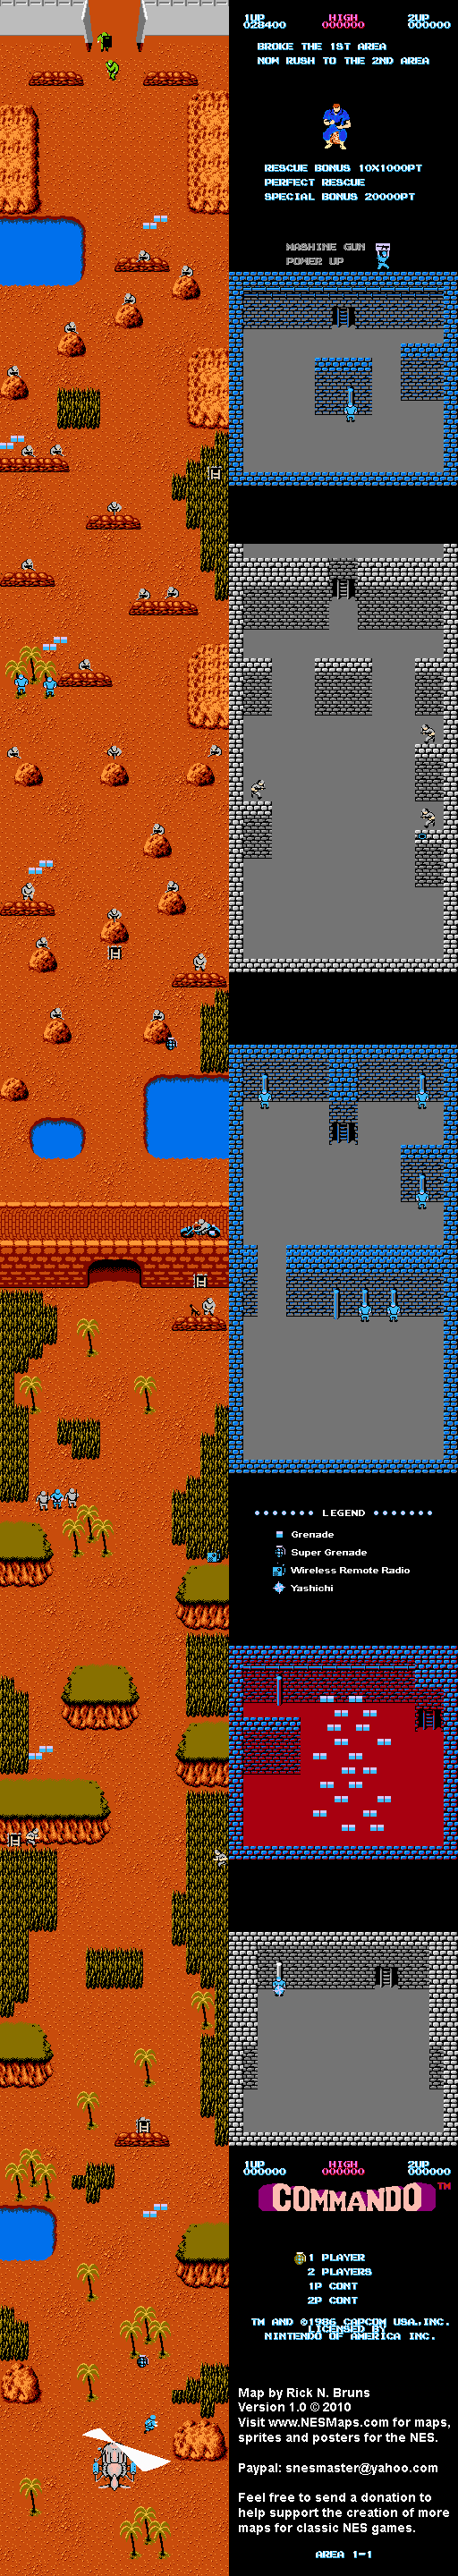 Commando - Area 1-1 - Nintendo NES Map